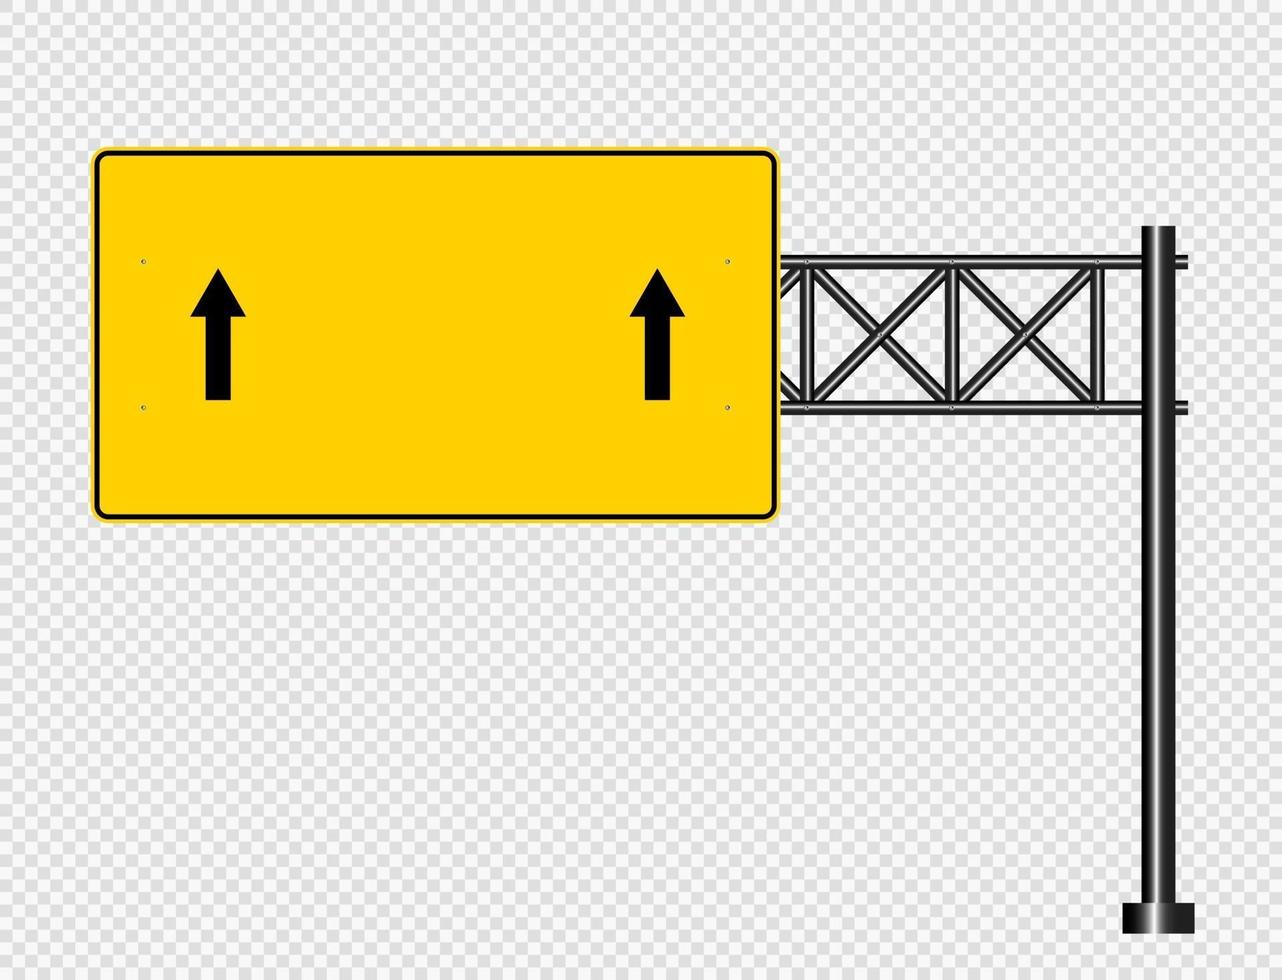 Straßenautobahnzeichen gelbe Tafel auf Straße vektor